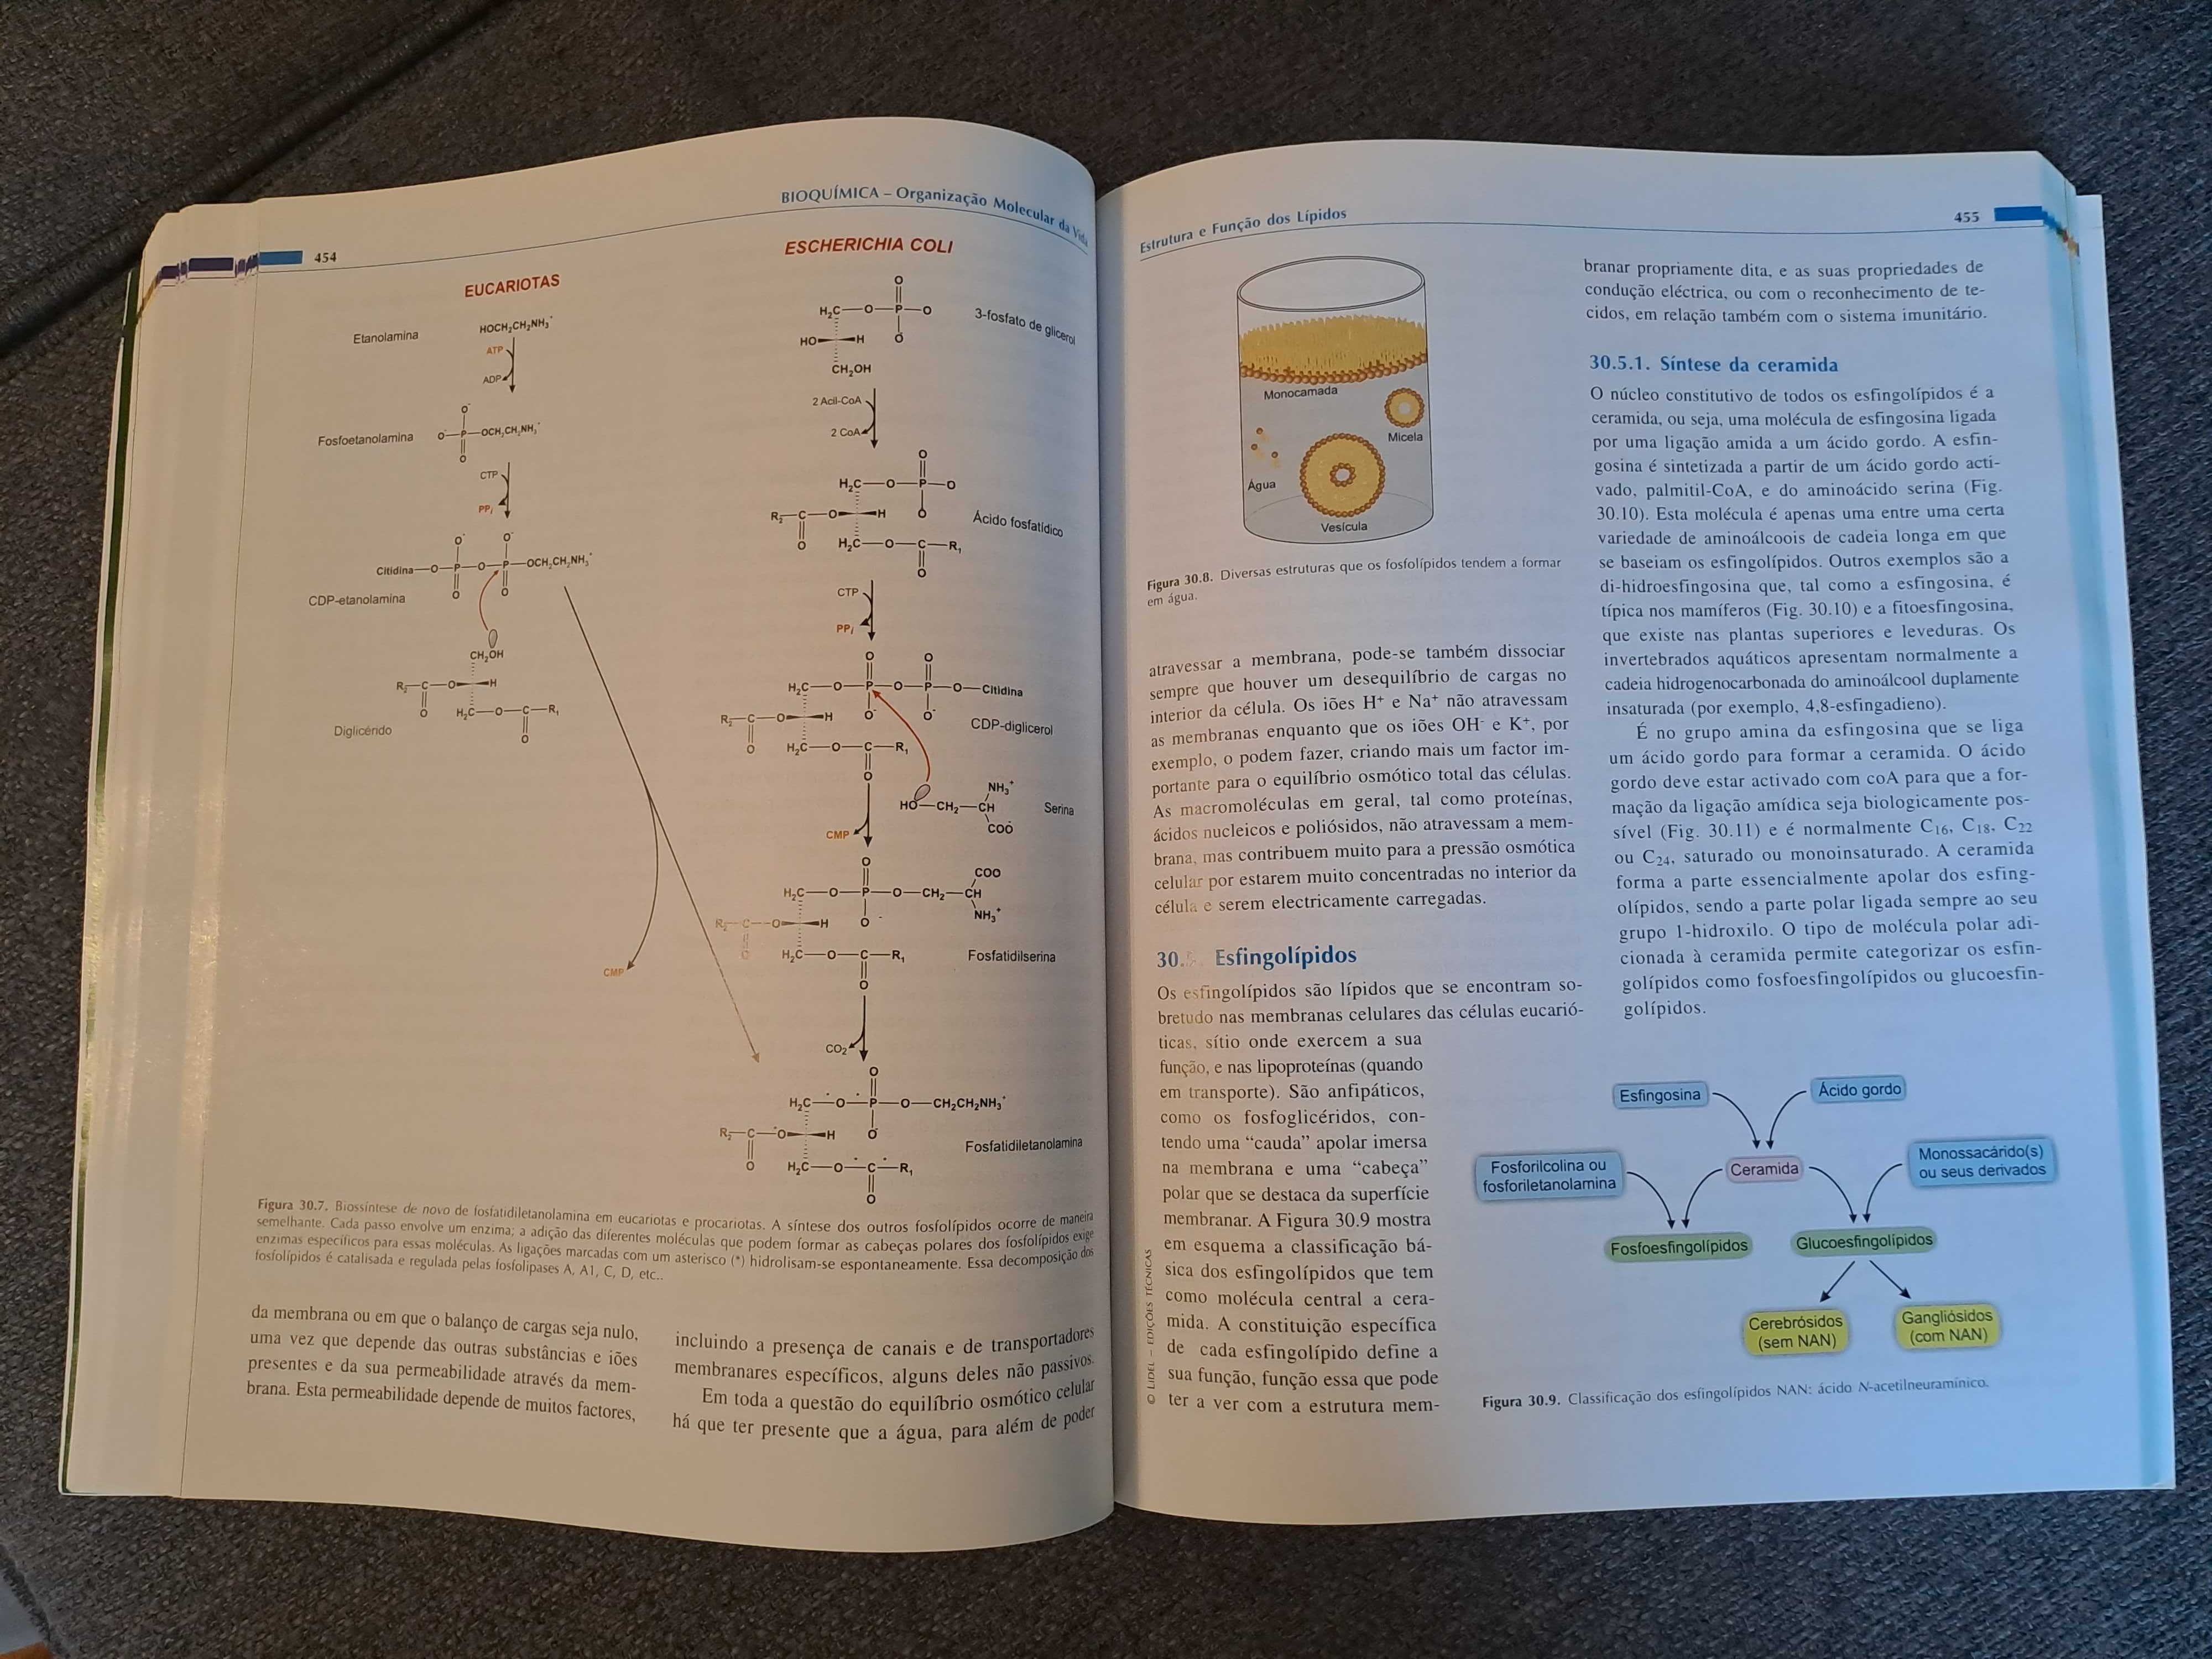 Livro "Bioquímica - Organização Molecular da Vida"